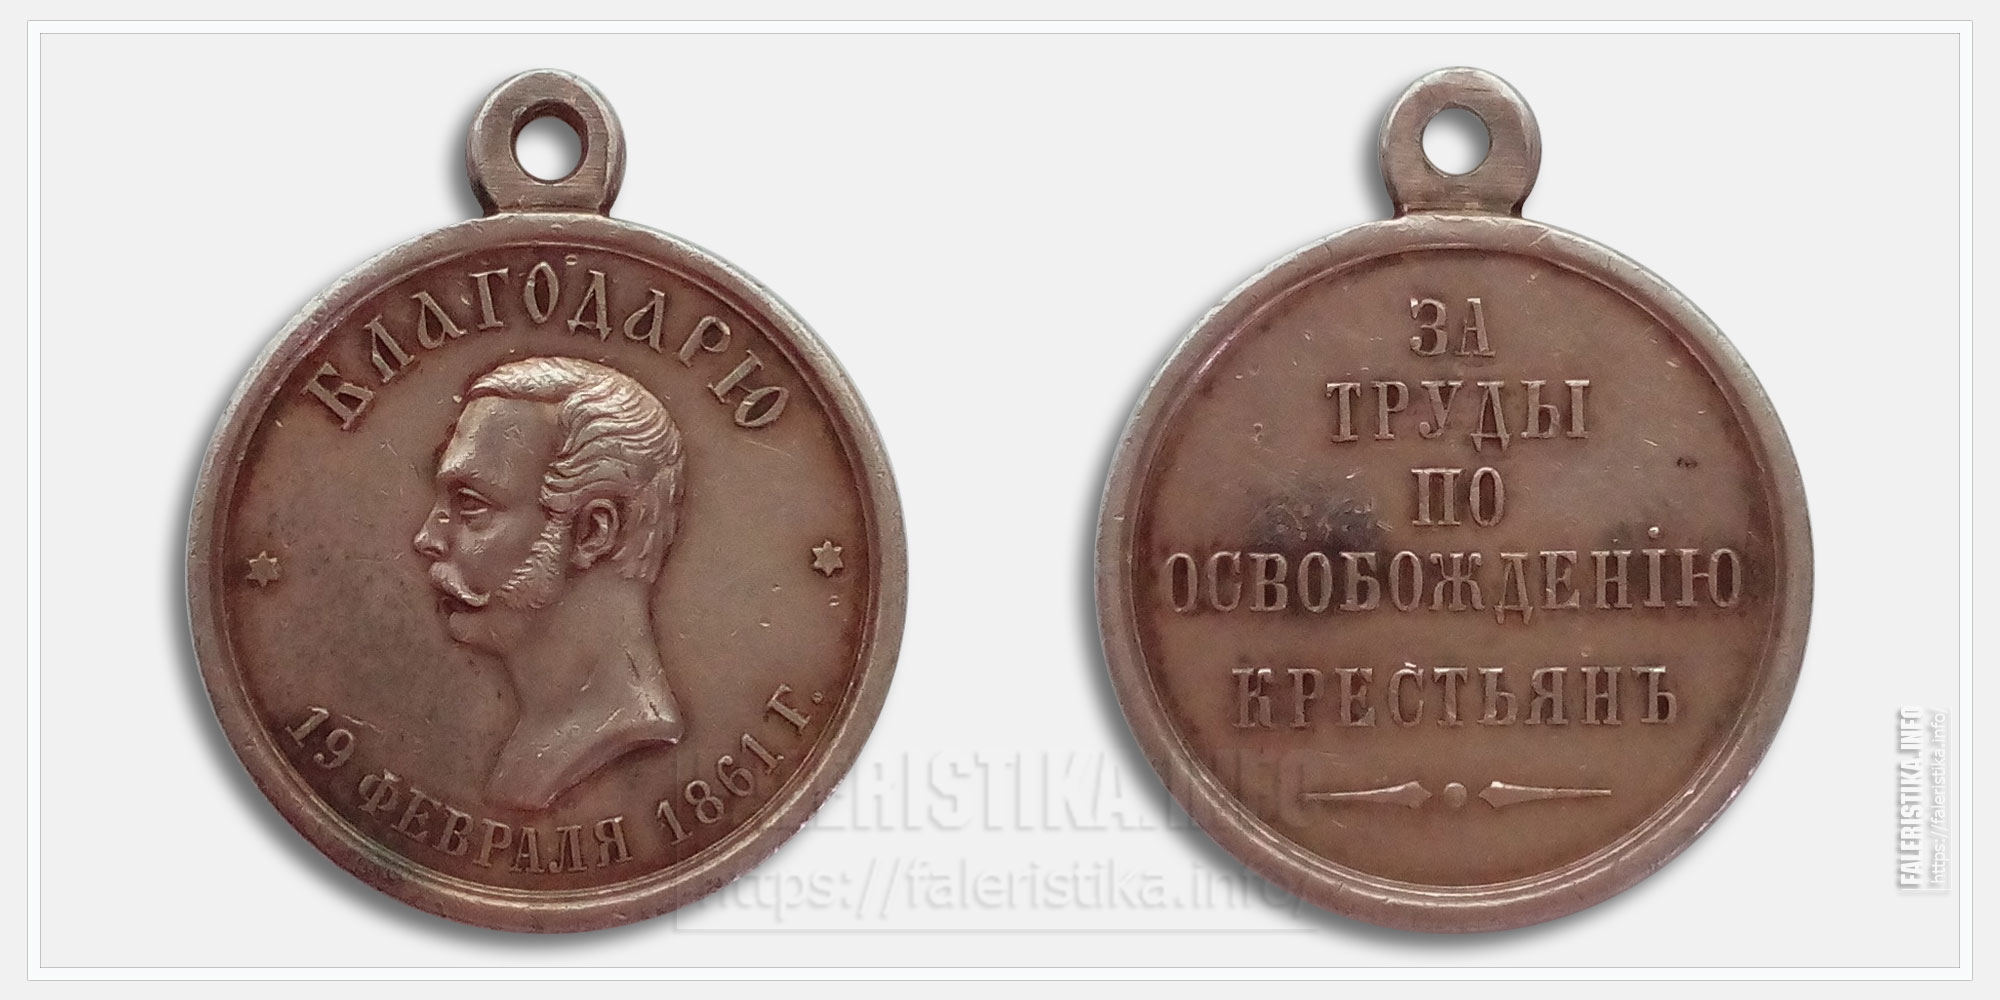 Медаль "За труды по освобождению крестьян 19 февраля 1861 г."